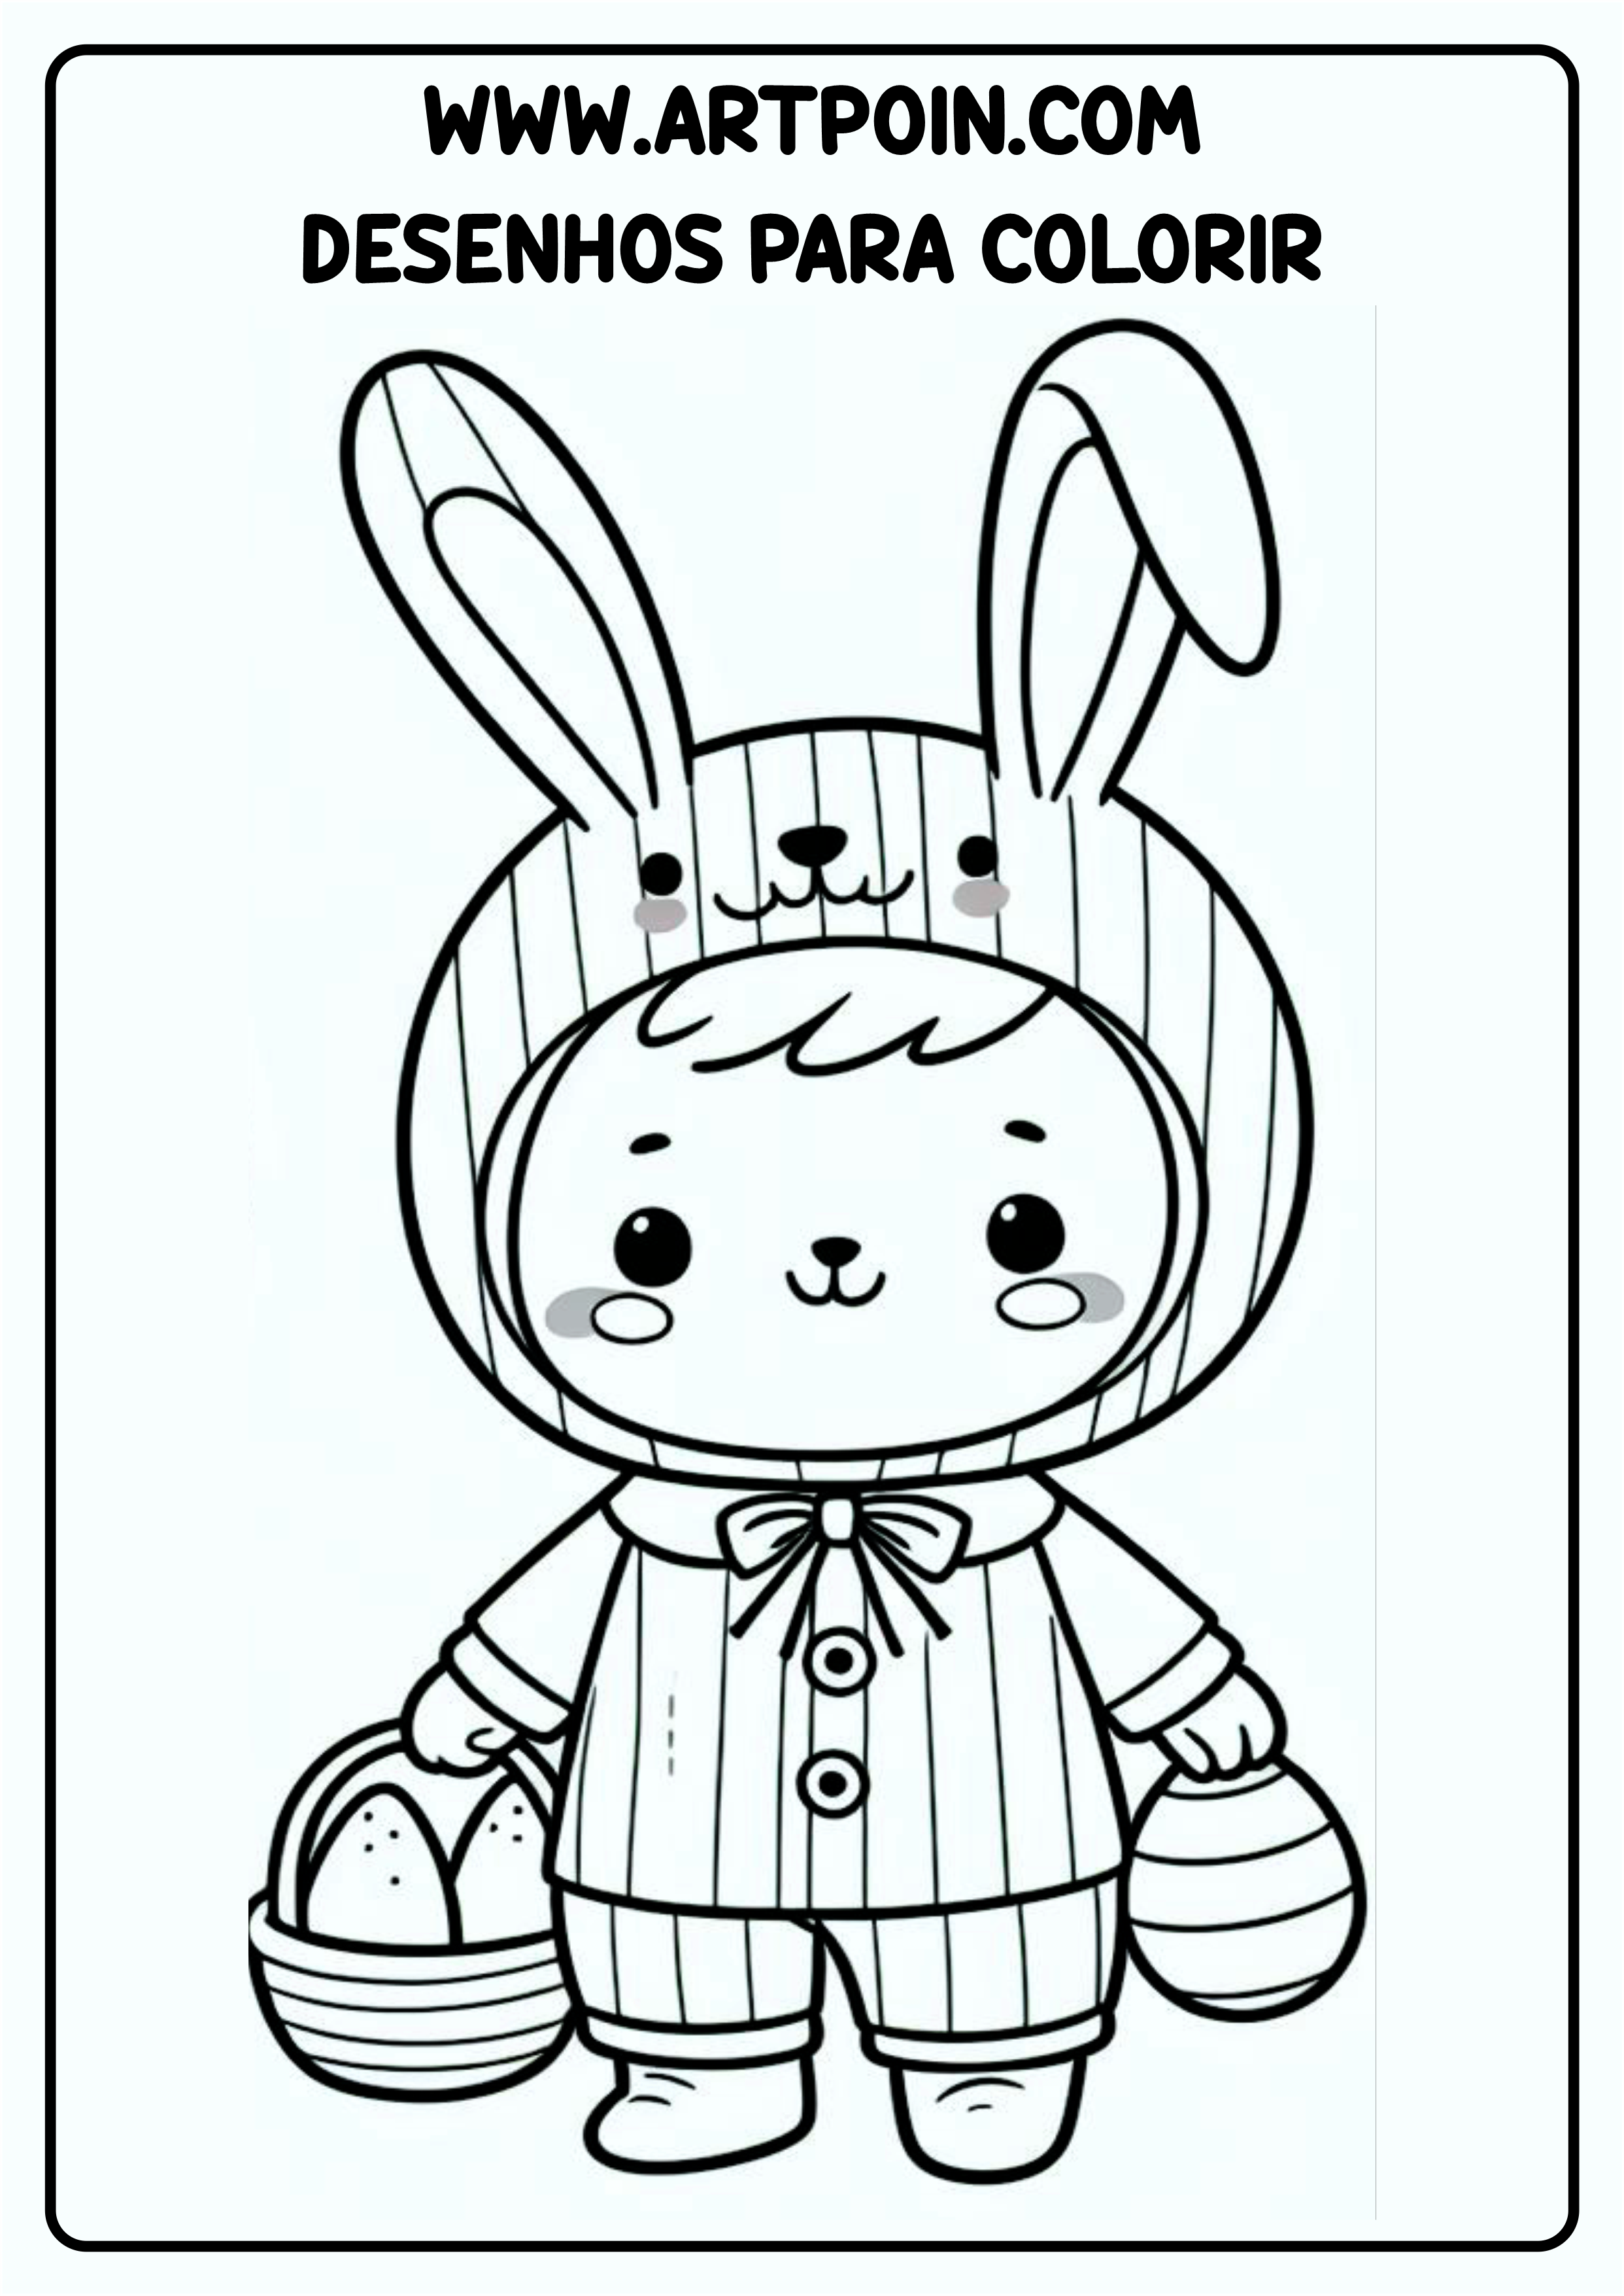 Desenho para colorir menino com roupa de coelhinho da páscoa para imprimir png